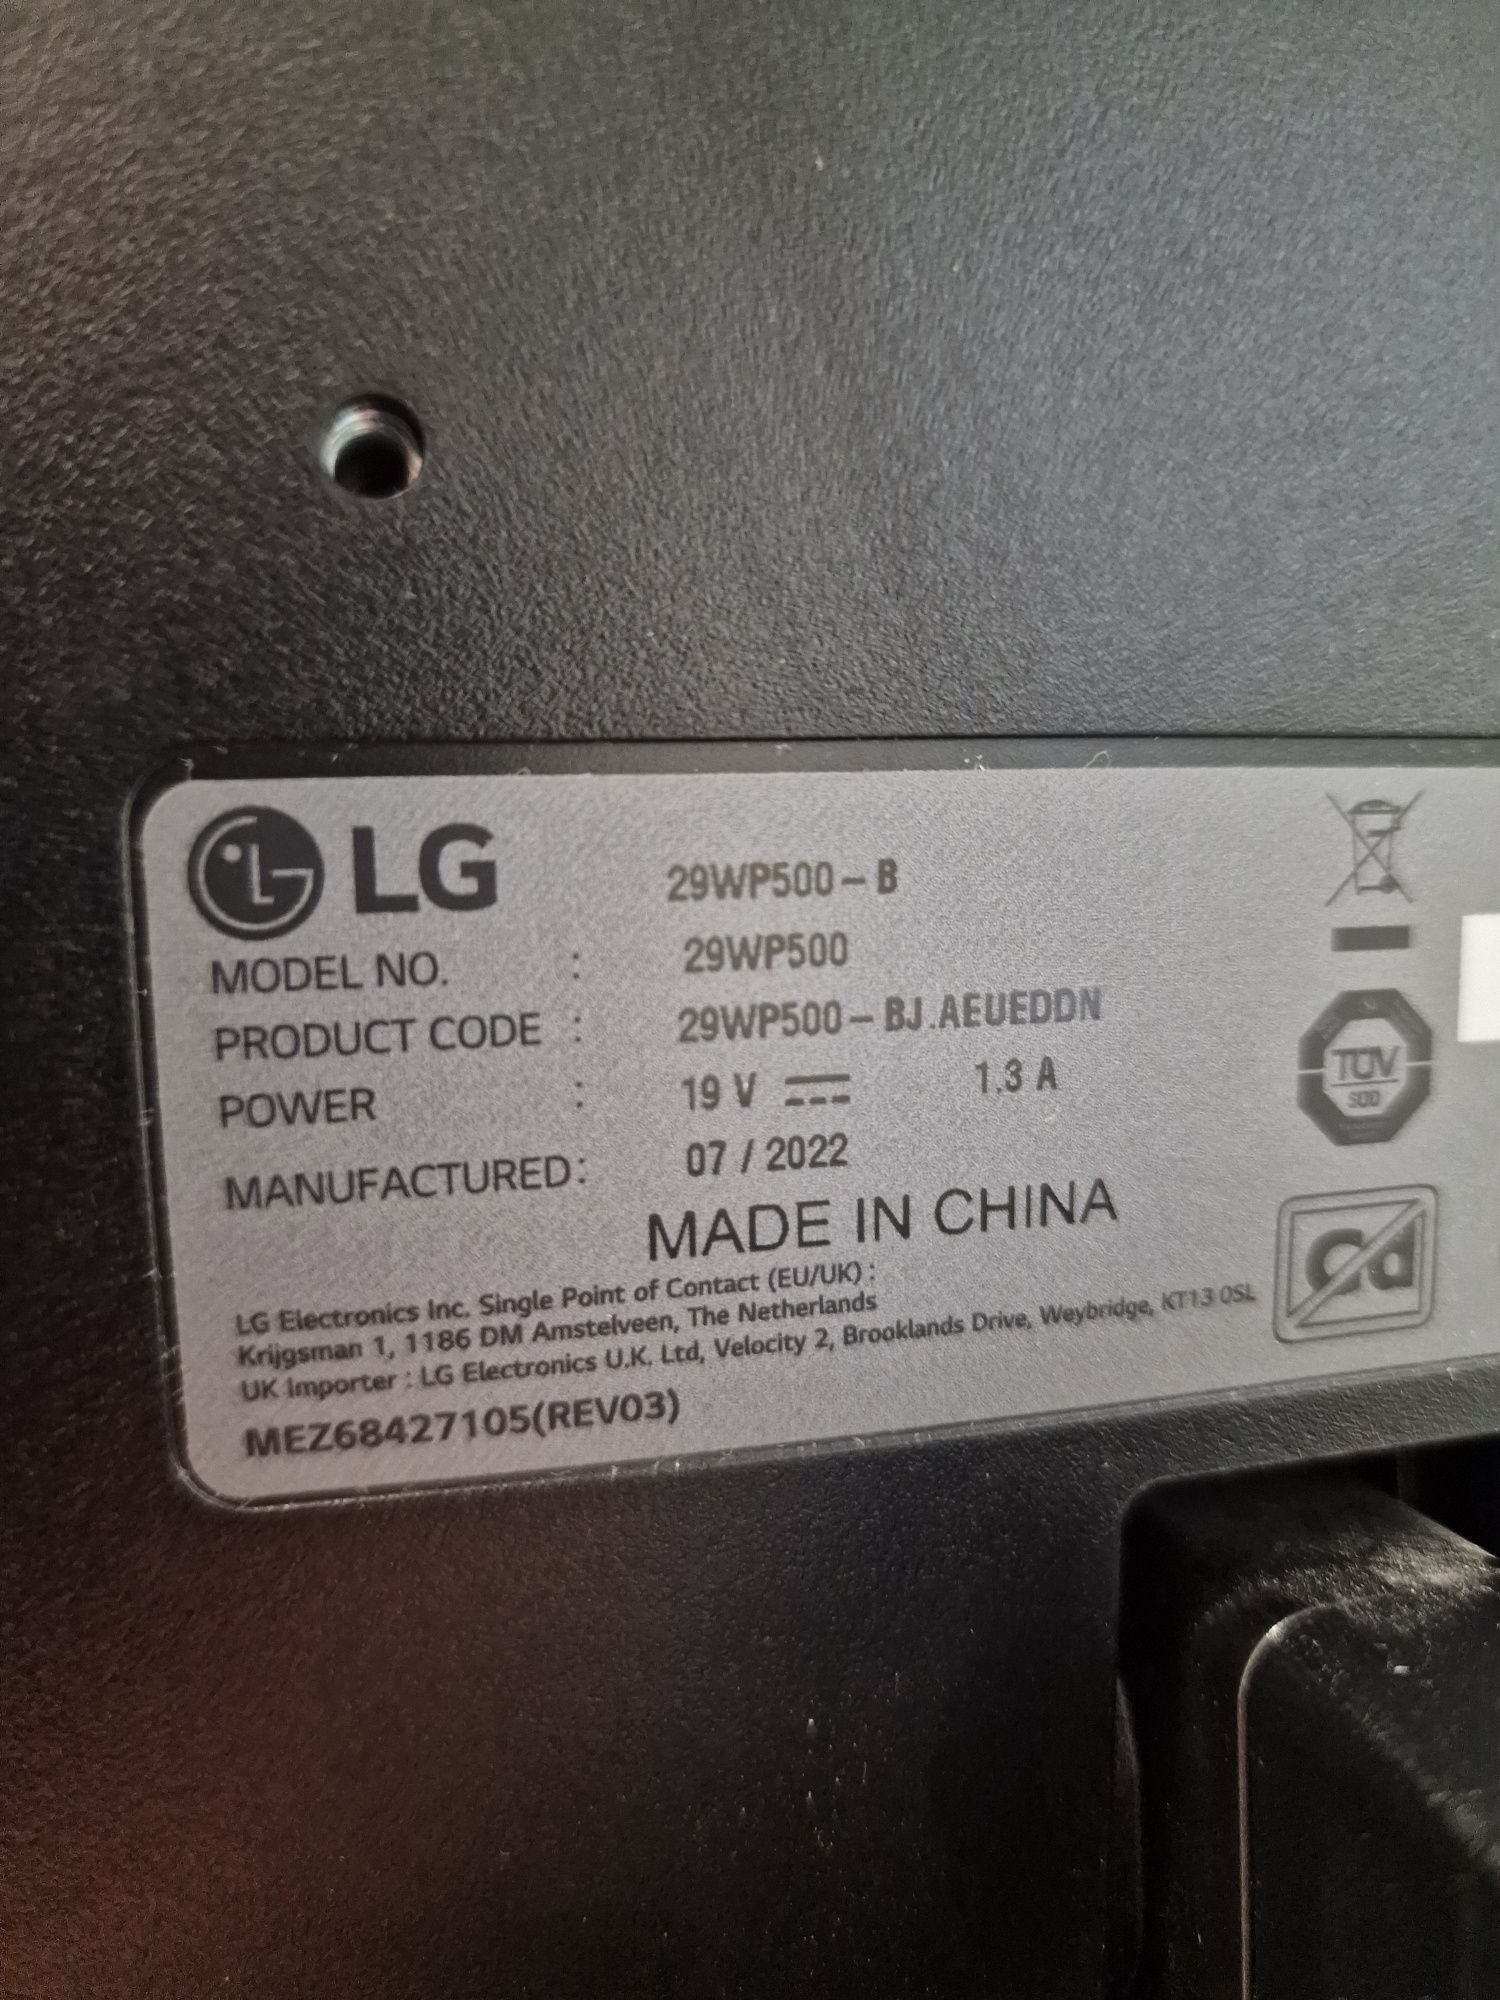 Monitor LG - 29" inch Wide - FullHD - 2x HDMI -  HDR10 - FreeSync